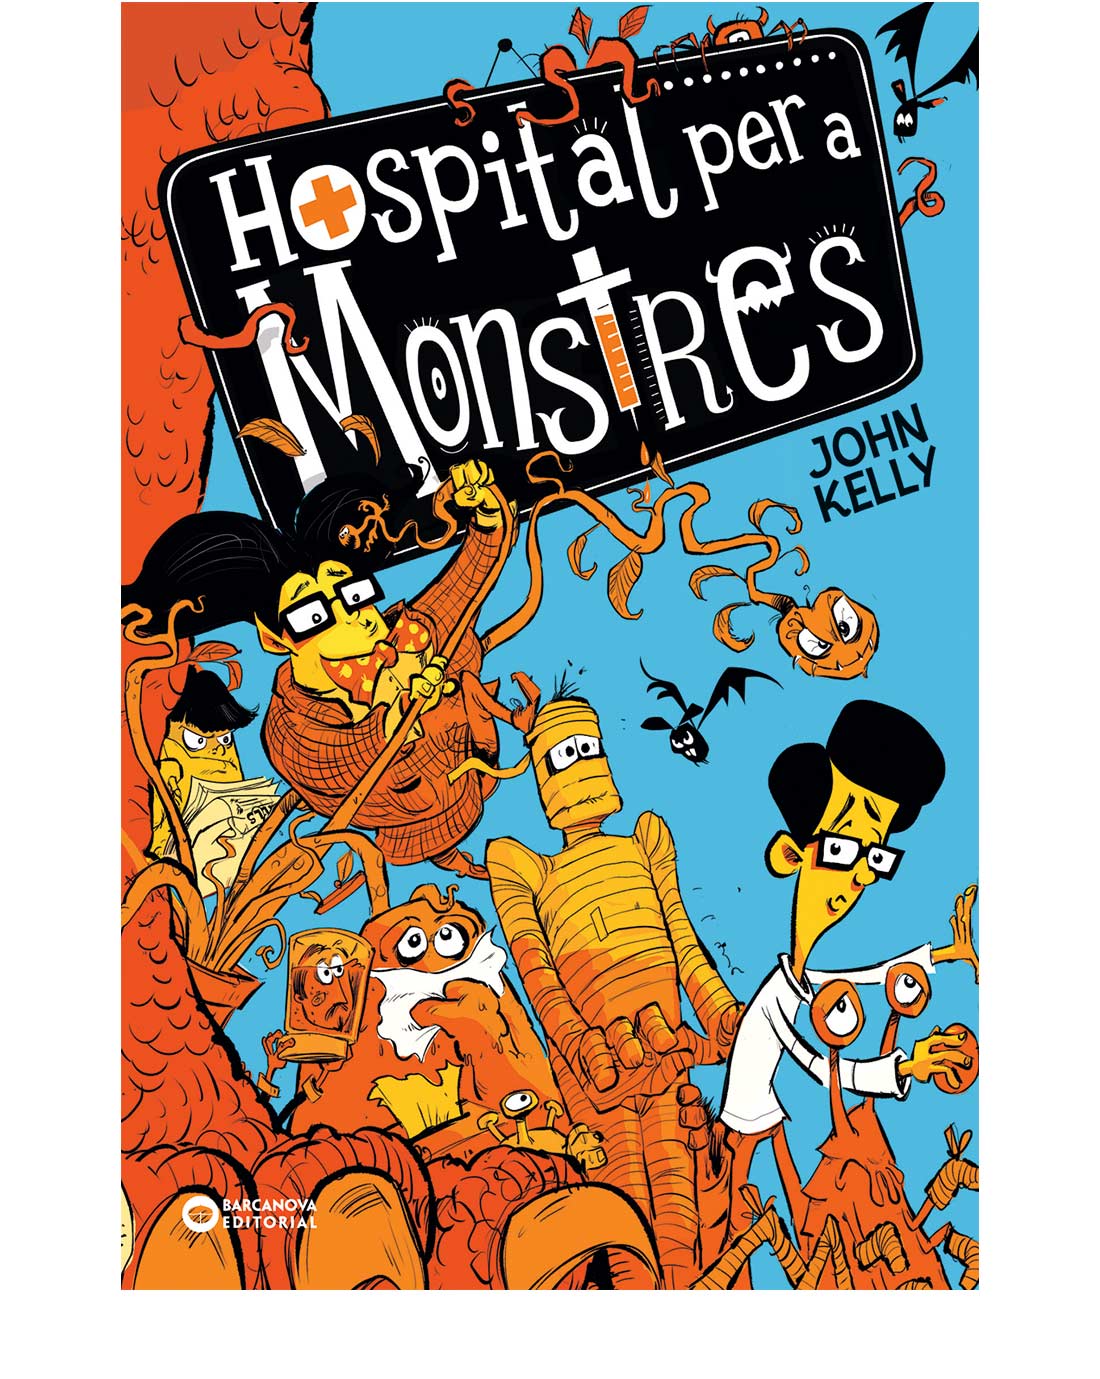 Hospital per a monstres